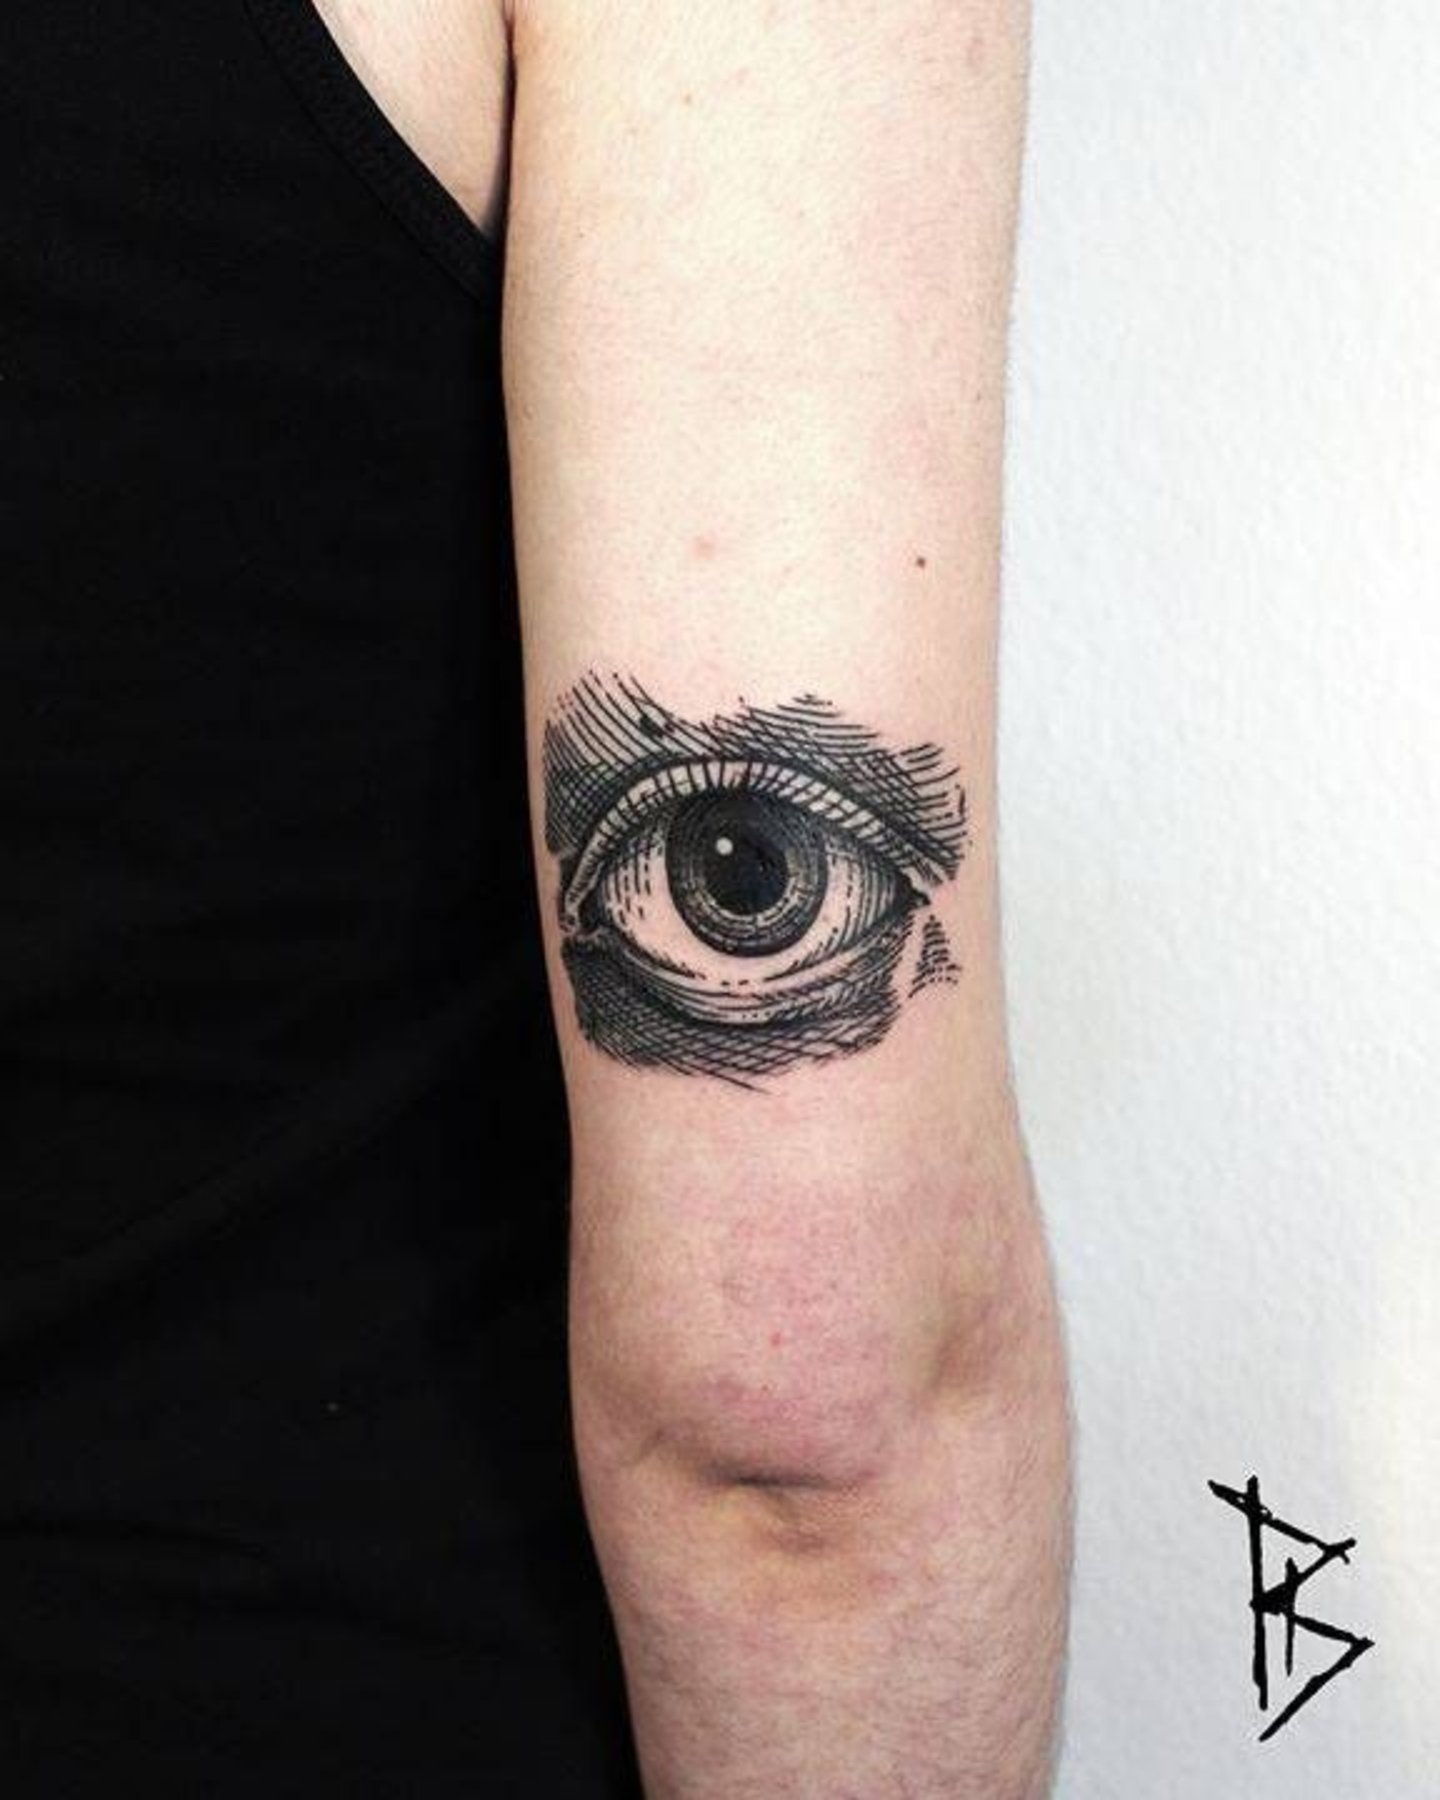 Tatuaje de ojo imponente